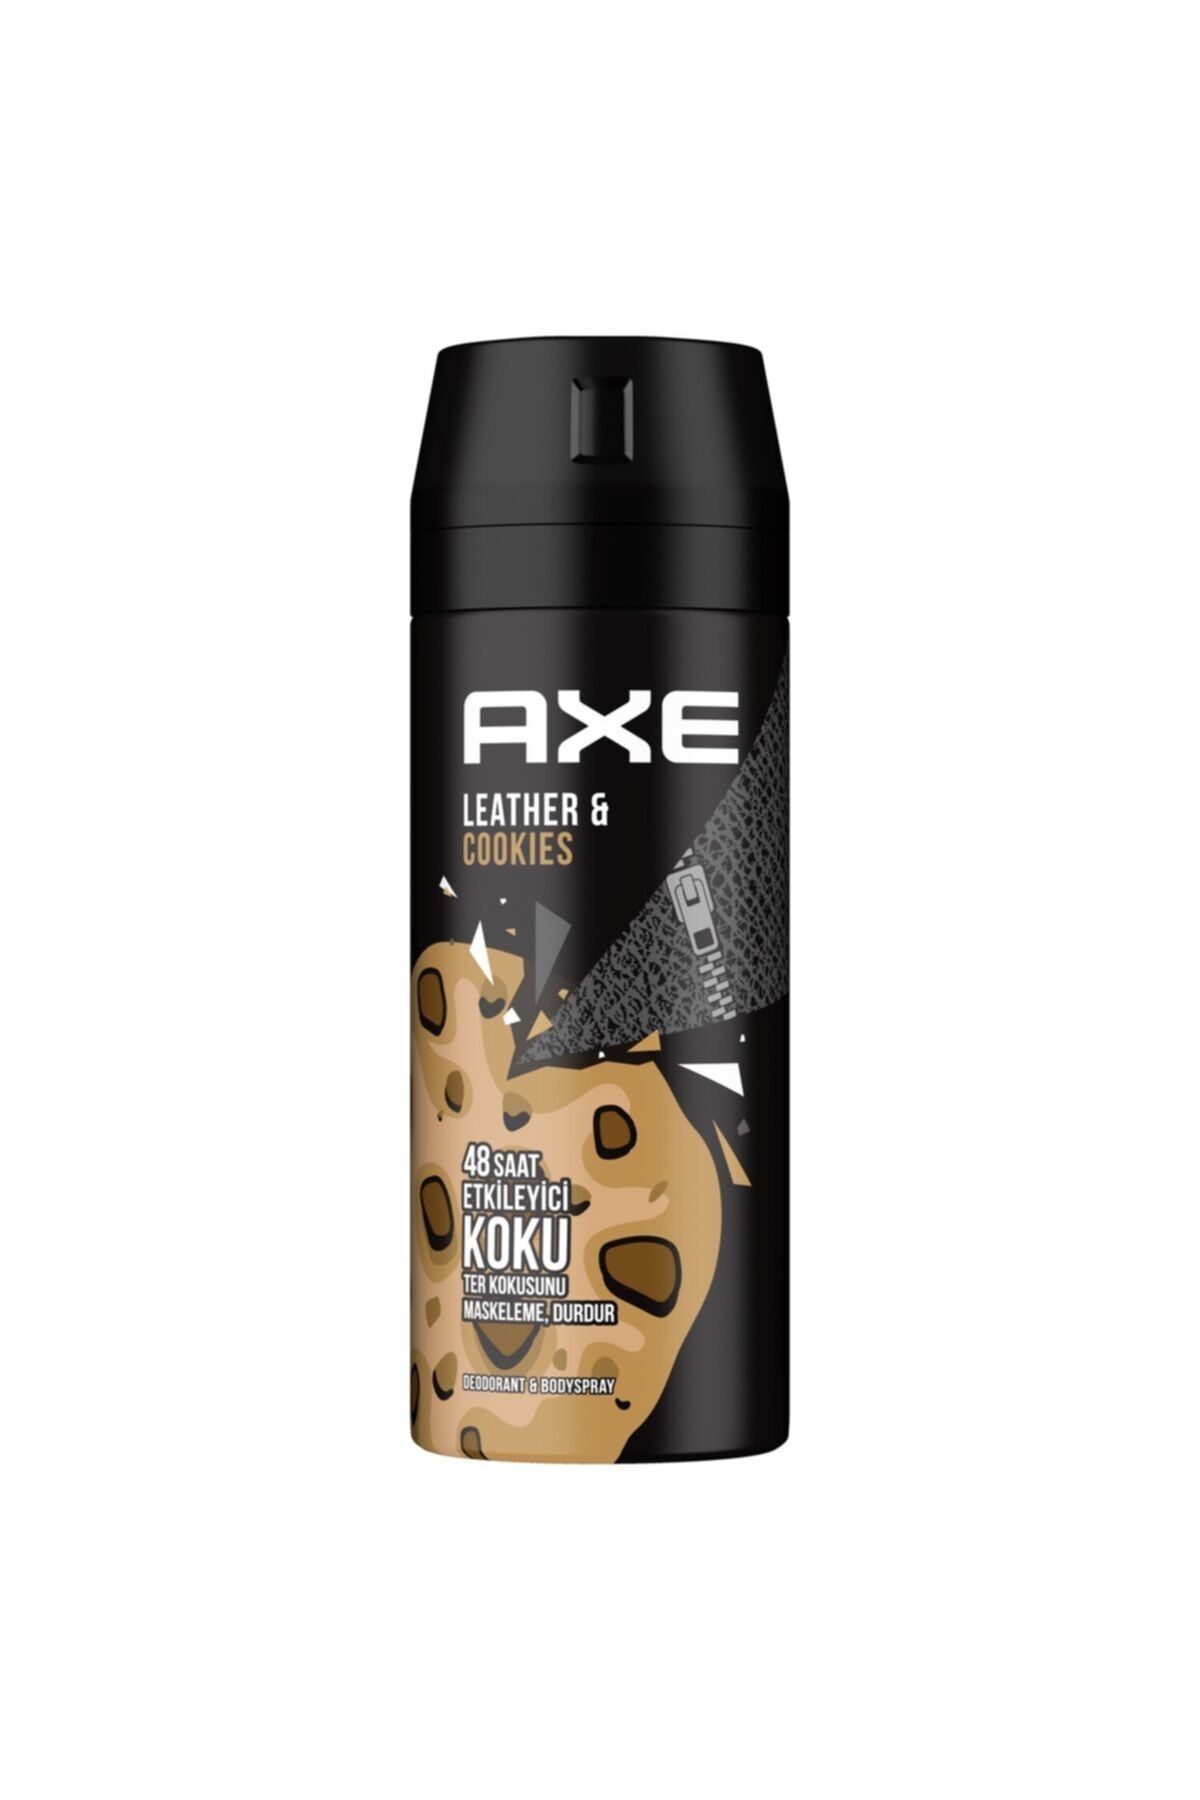 Axe Erkek Deodorant Bodyspray Leather & Cookies 48 Saat Etkileyici Koku 150 ml